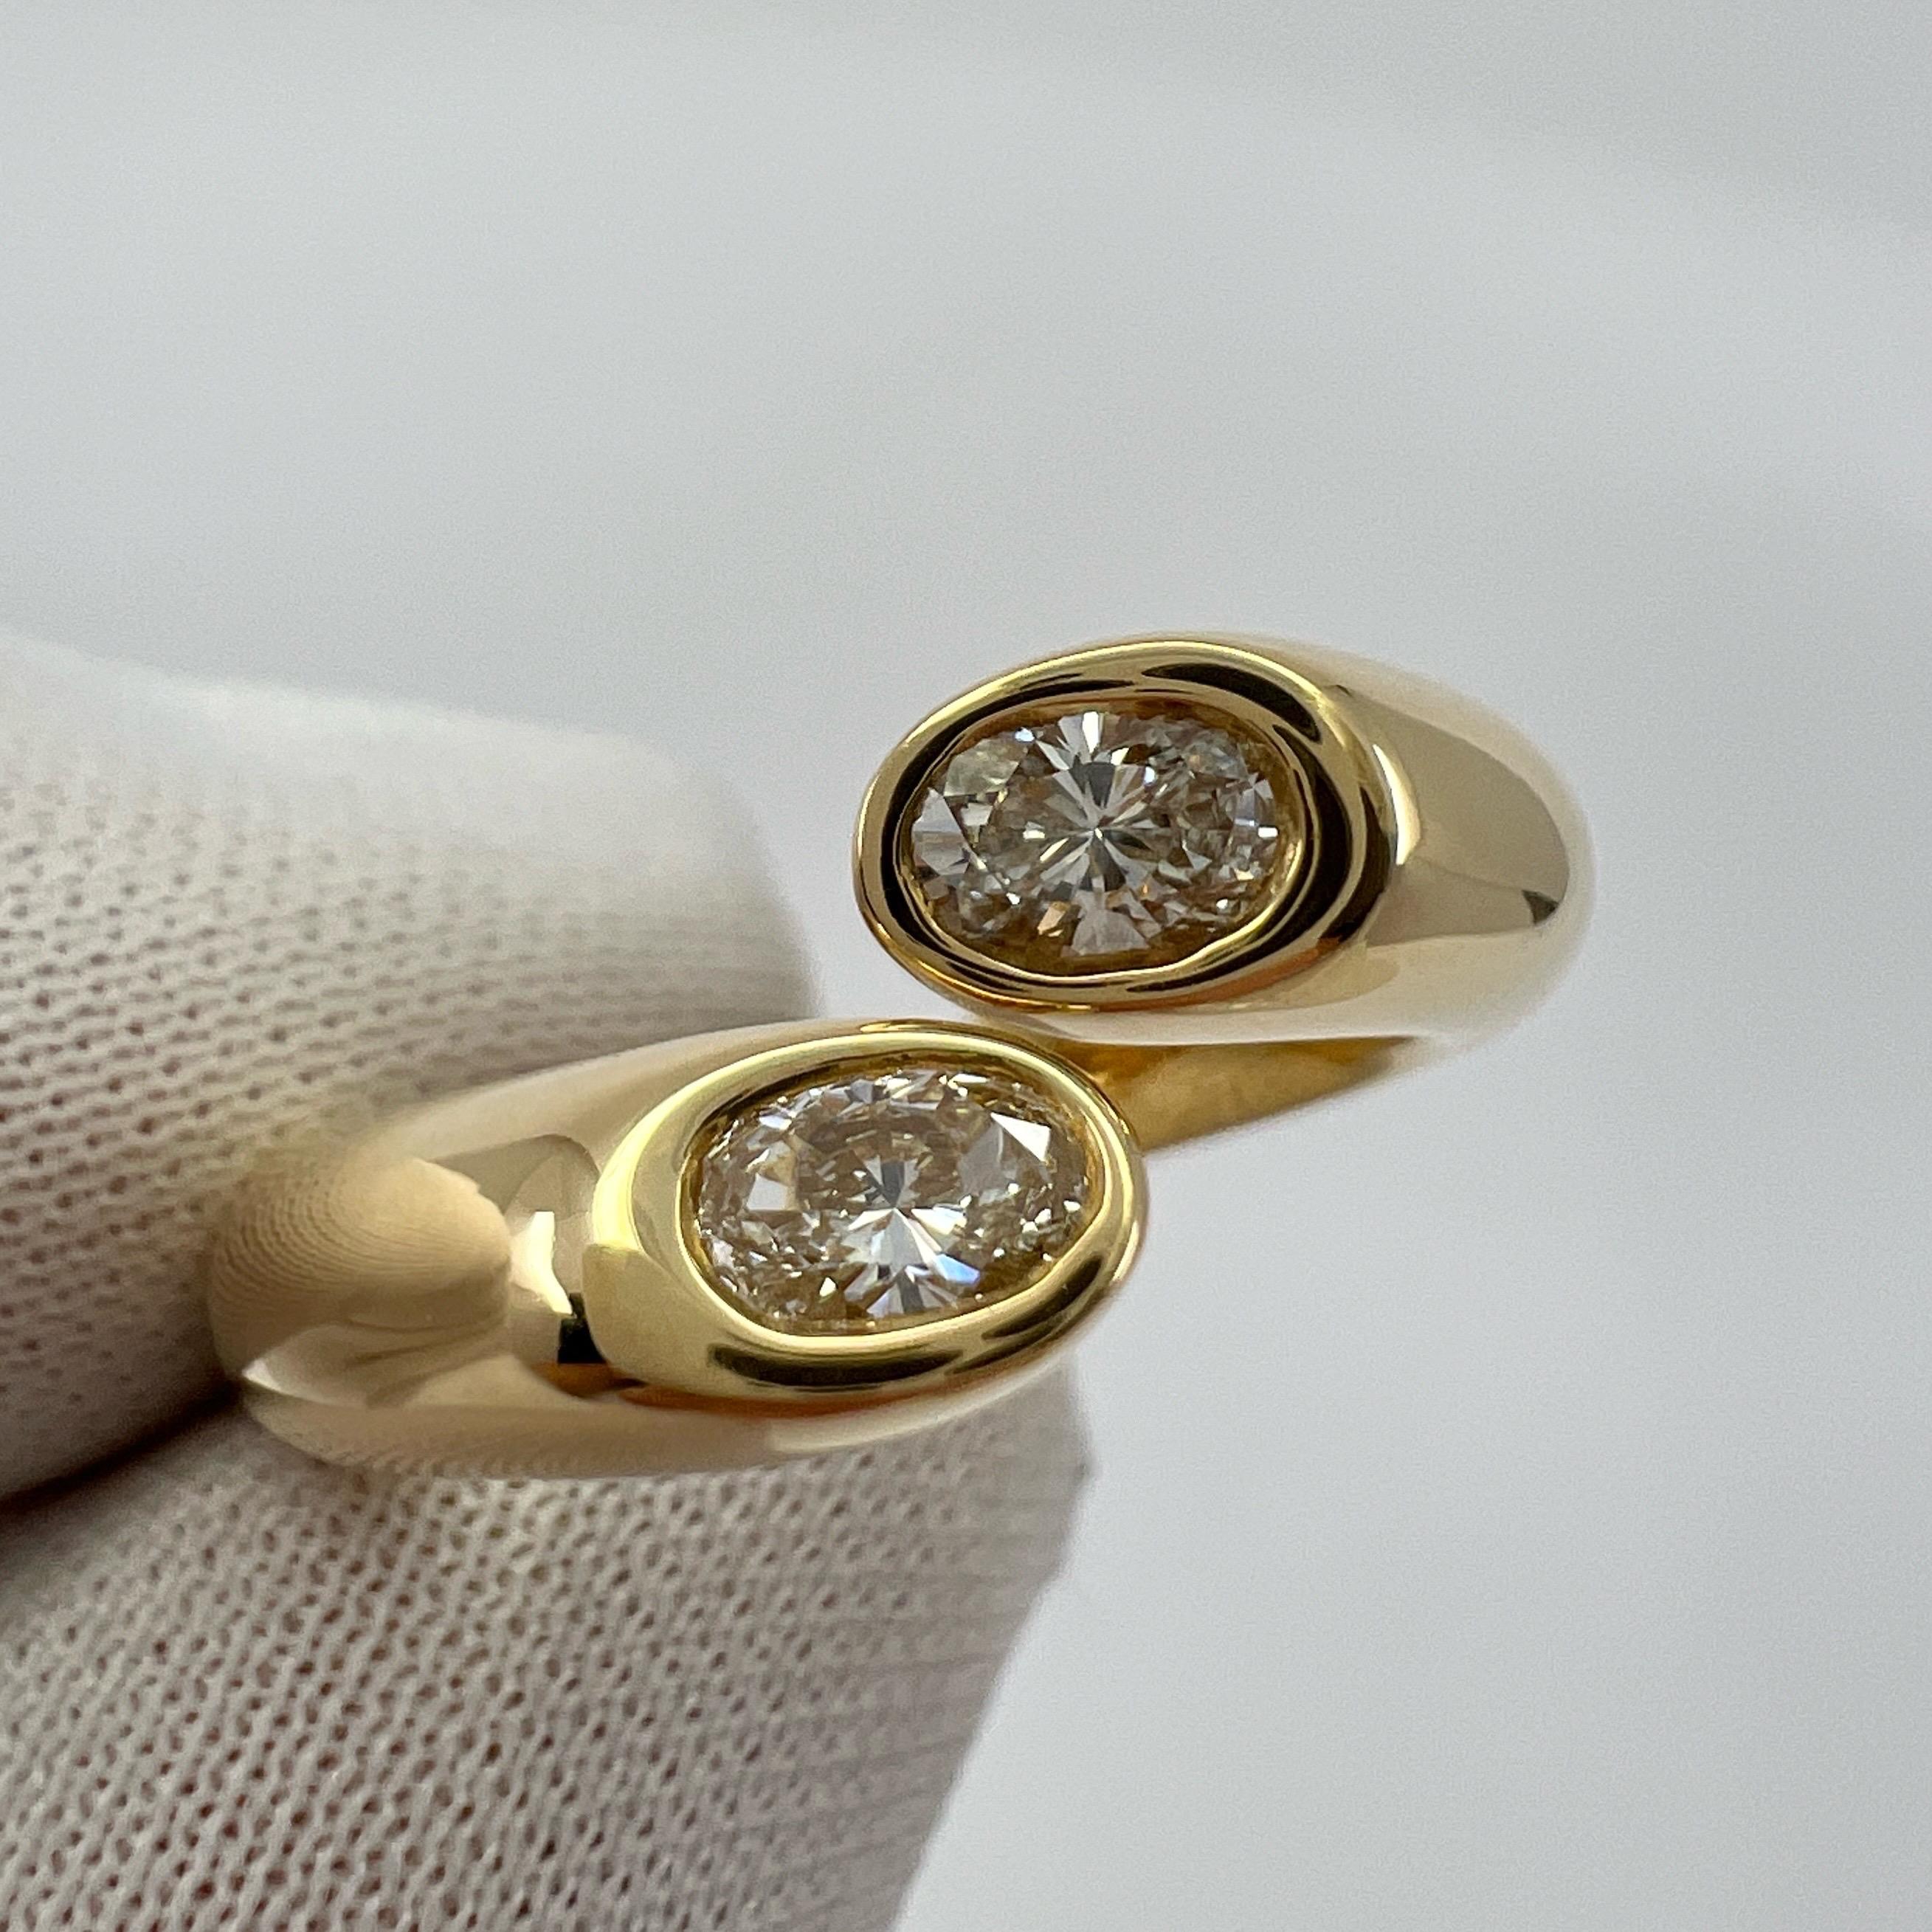 Taille ovale Cartier rare bague vintage fendue Ellipse en or 18 carats avec diamants taille ovale taille US 5